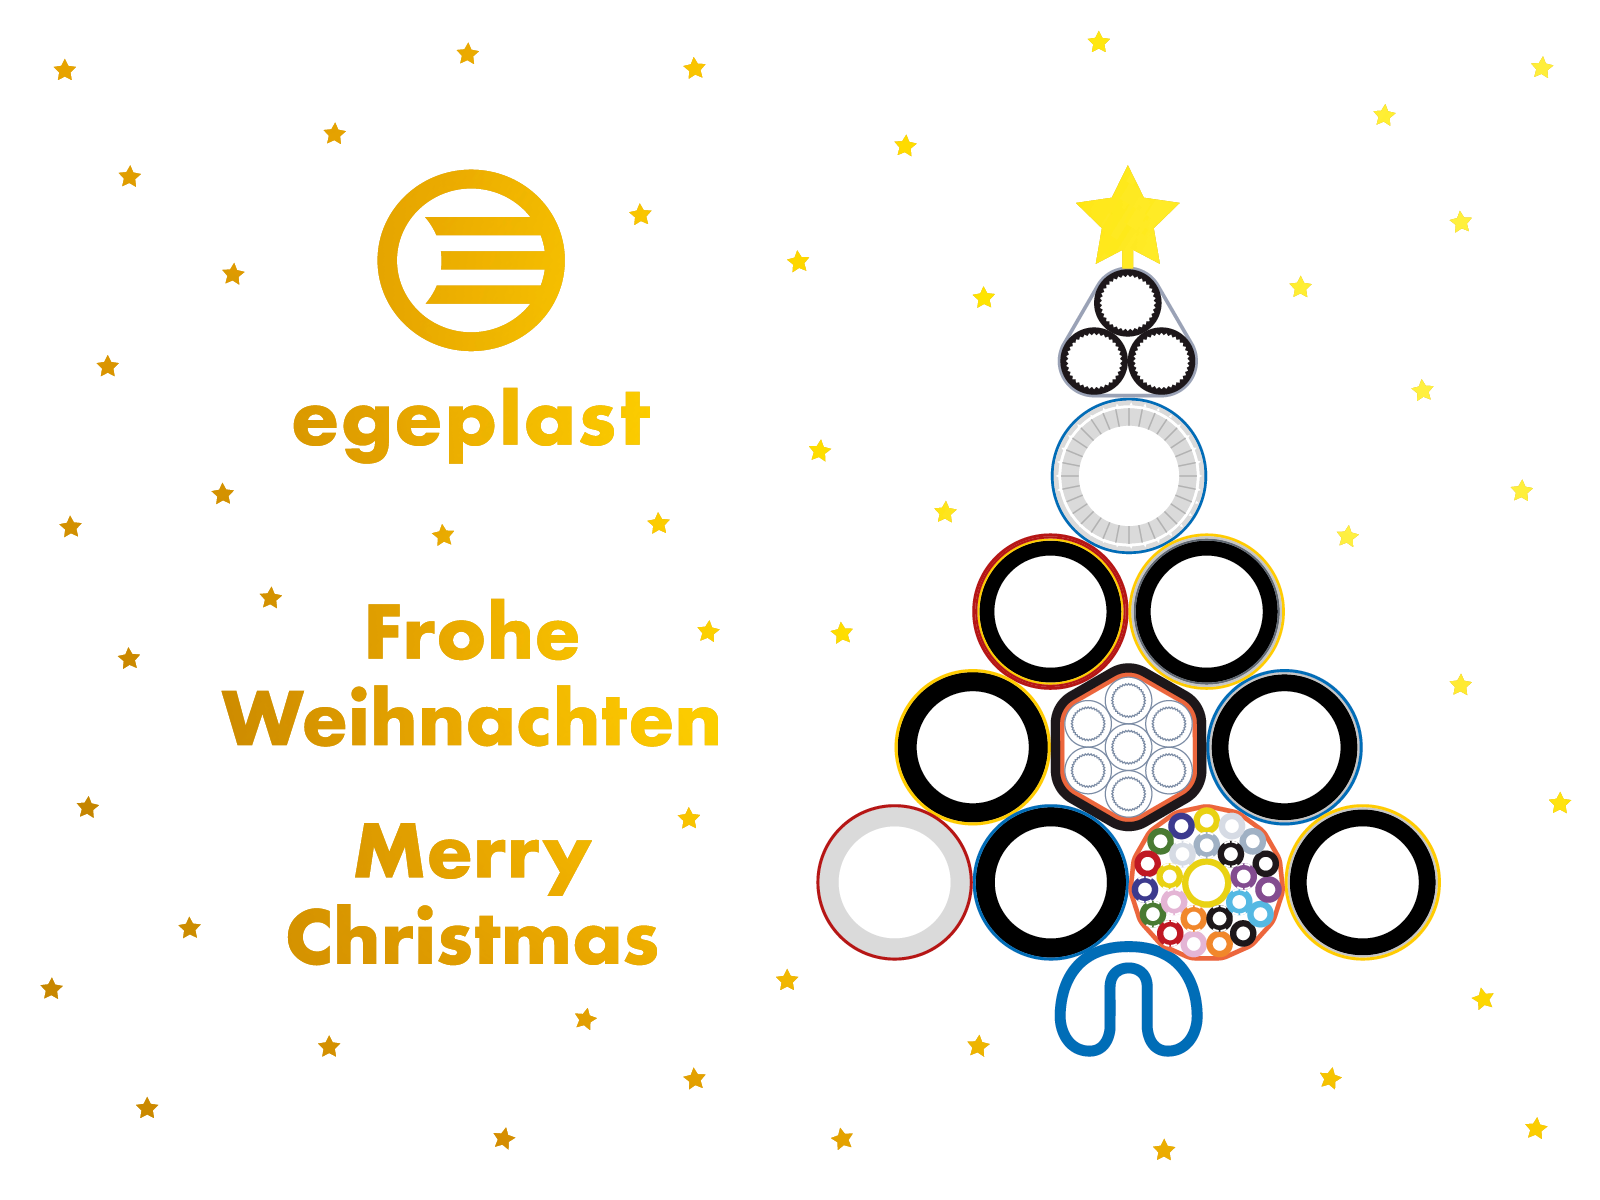 Frohe Weihnachten! egeplast wünscht fröhlicher Feiertage und einen guten Rutsch!